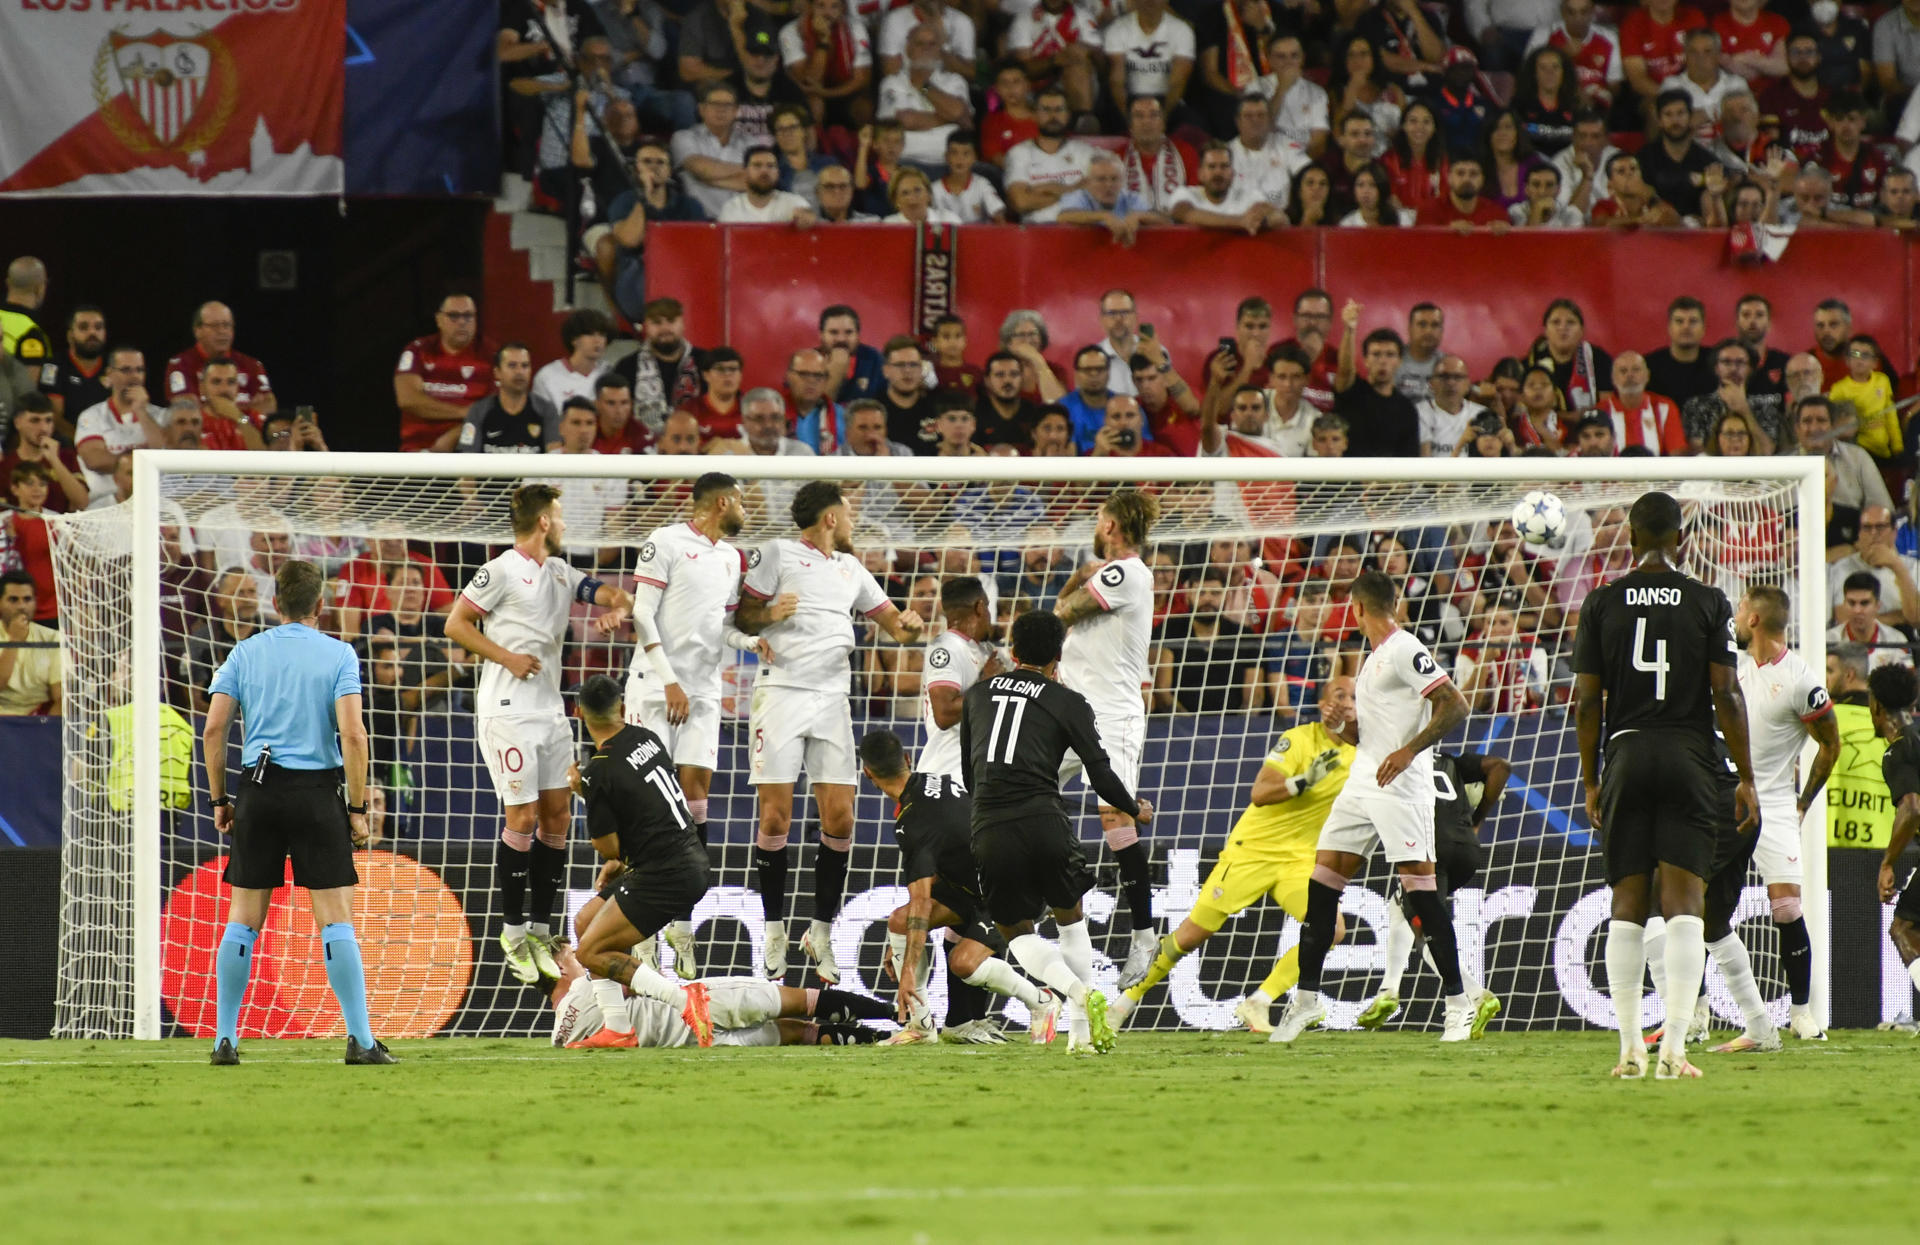 Bola parada define empate entre Sevilla e Lens pela Champions